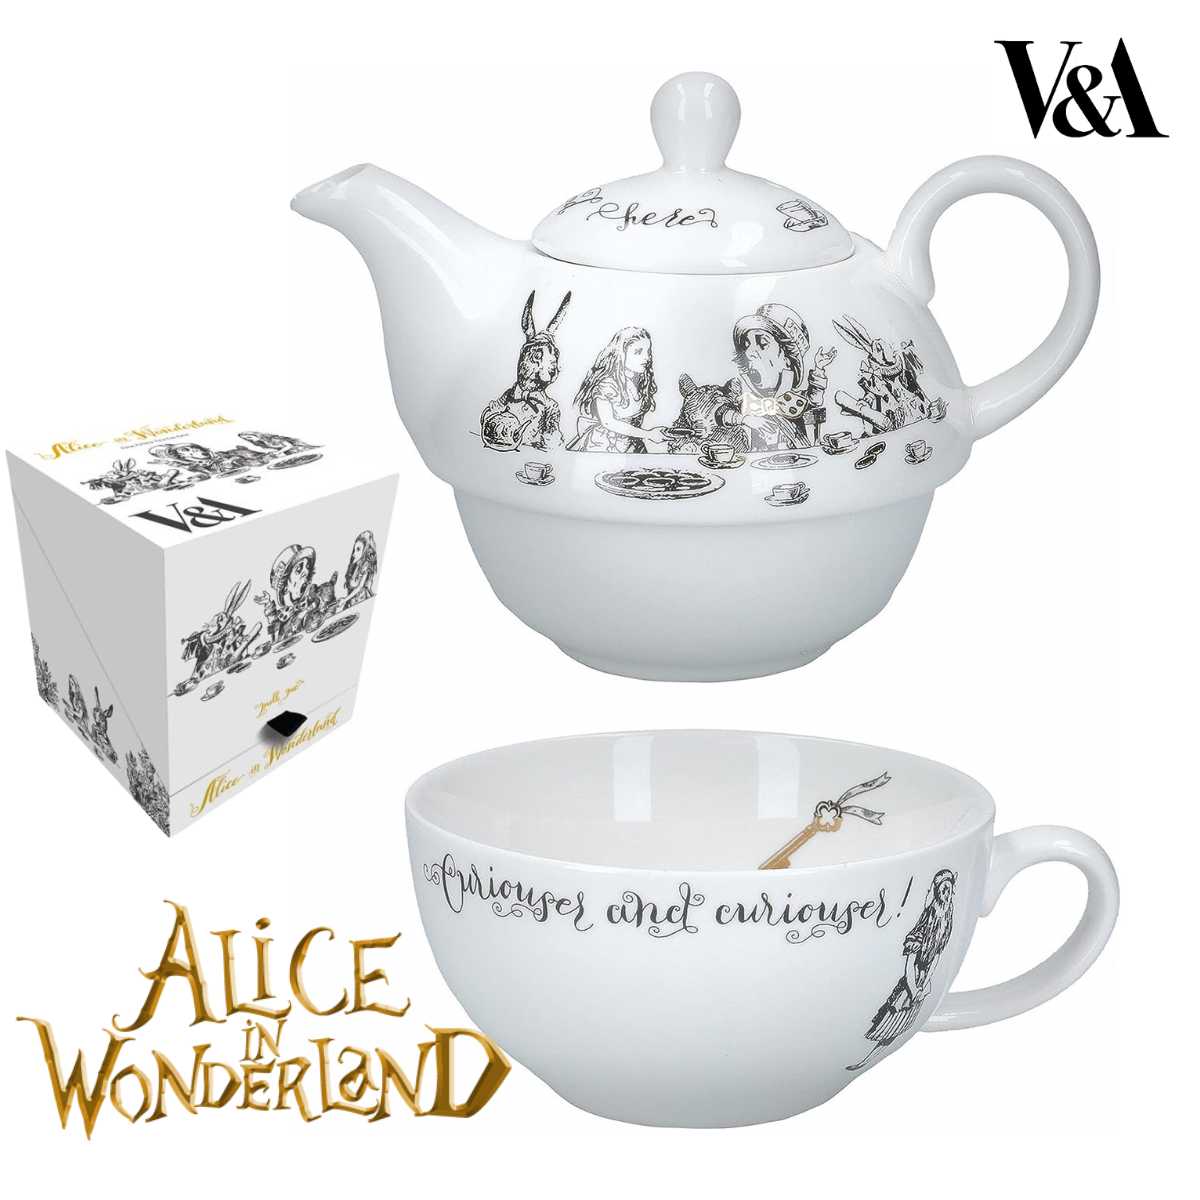 ティーセット Victoria And Albert Alice In Wonderland V&A Alice Tea for one ポット&カップ ヴィクトリア&アルバートアリス イン ワンダーランド ギフト 贈答品 プレゼント 御祝 記念品 食器 ポット カップ セット ファインチャイナ